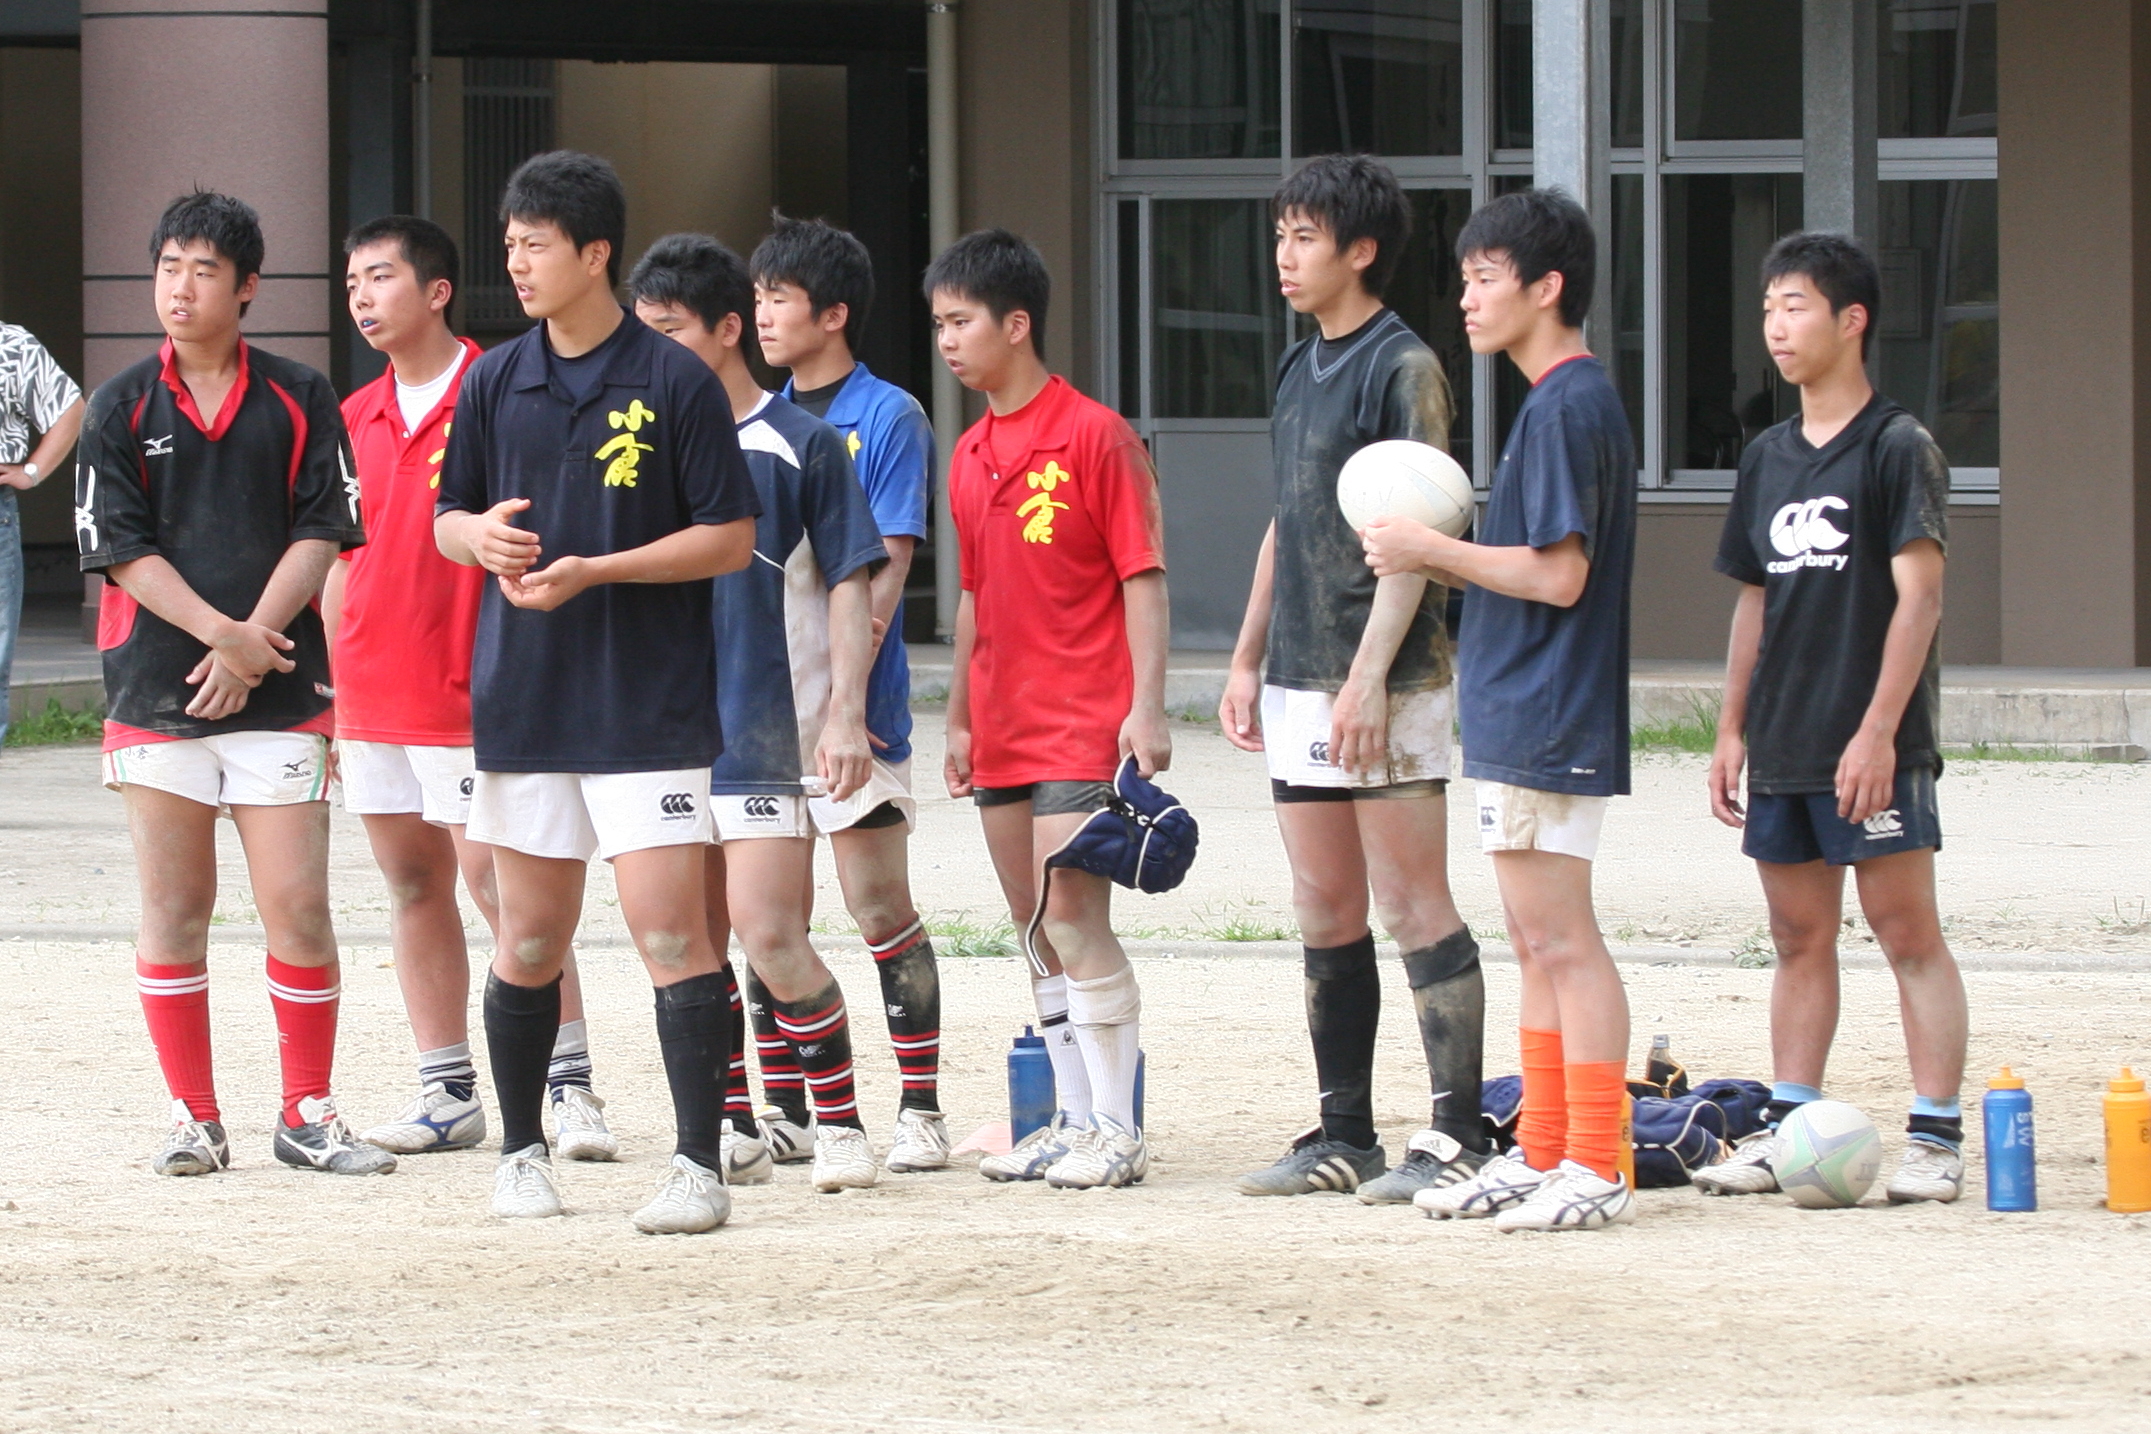 http://kokura-rugby.sakura.ne.jp/2010.7.31%E7%B7%B4%E7%BF%92%E9%A2%A8%E6%99%AF-2.JPG